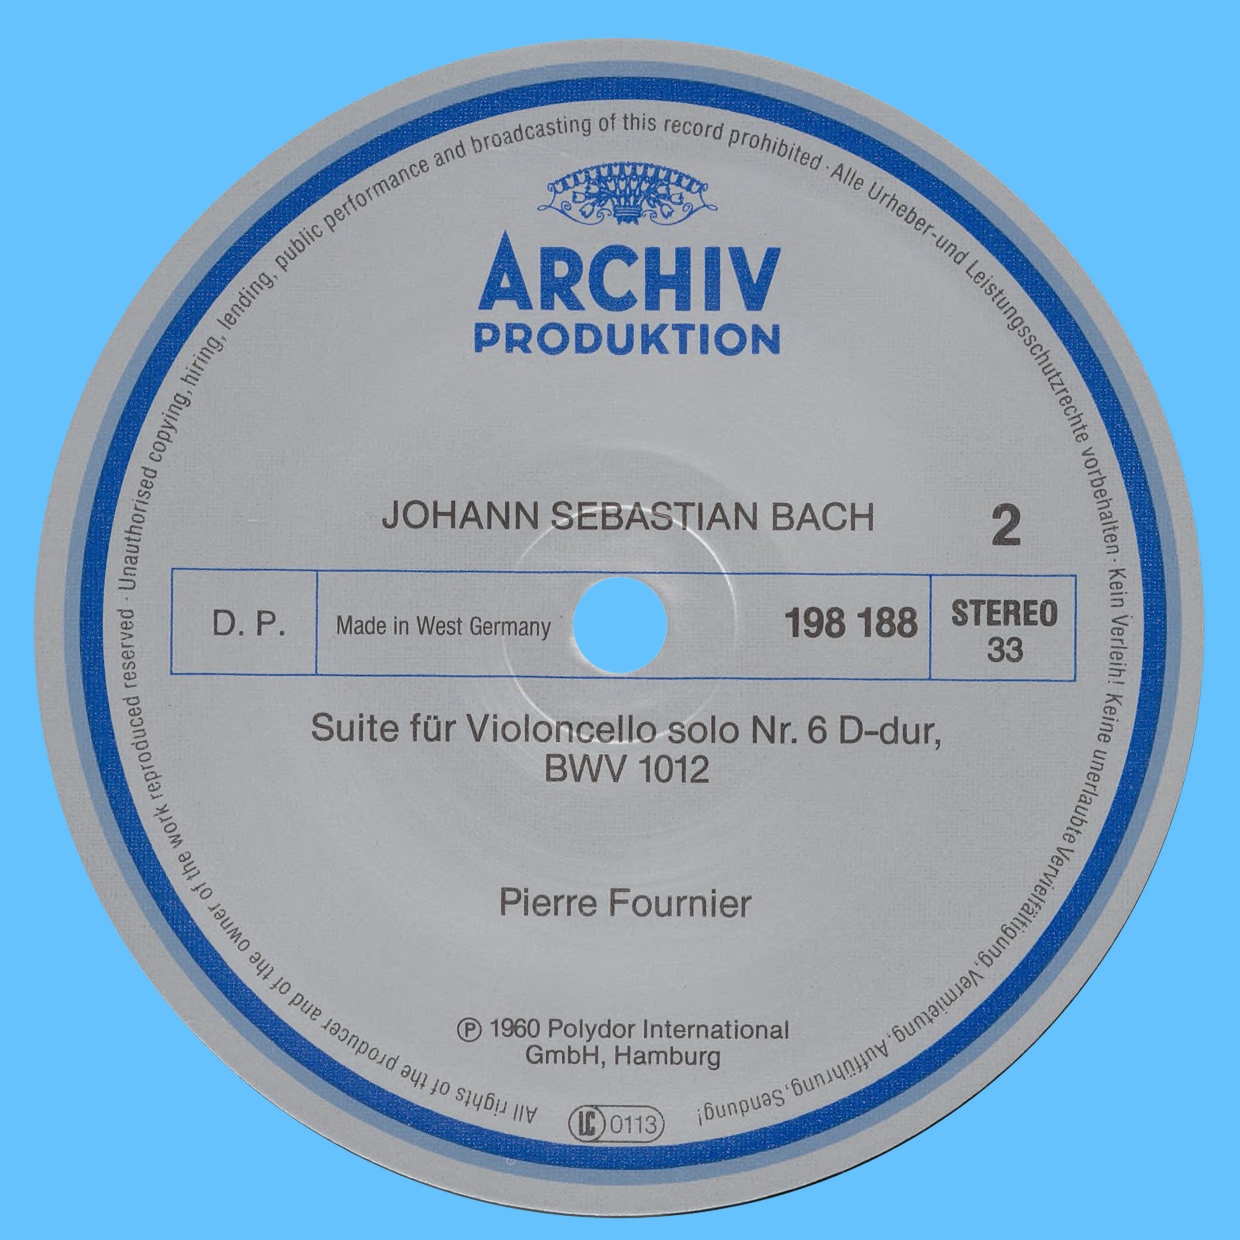 Étiquette verso du disque Archiv Produktion SAPM 198 188 